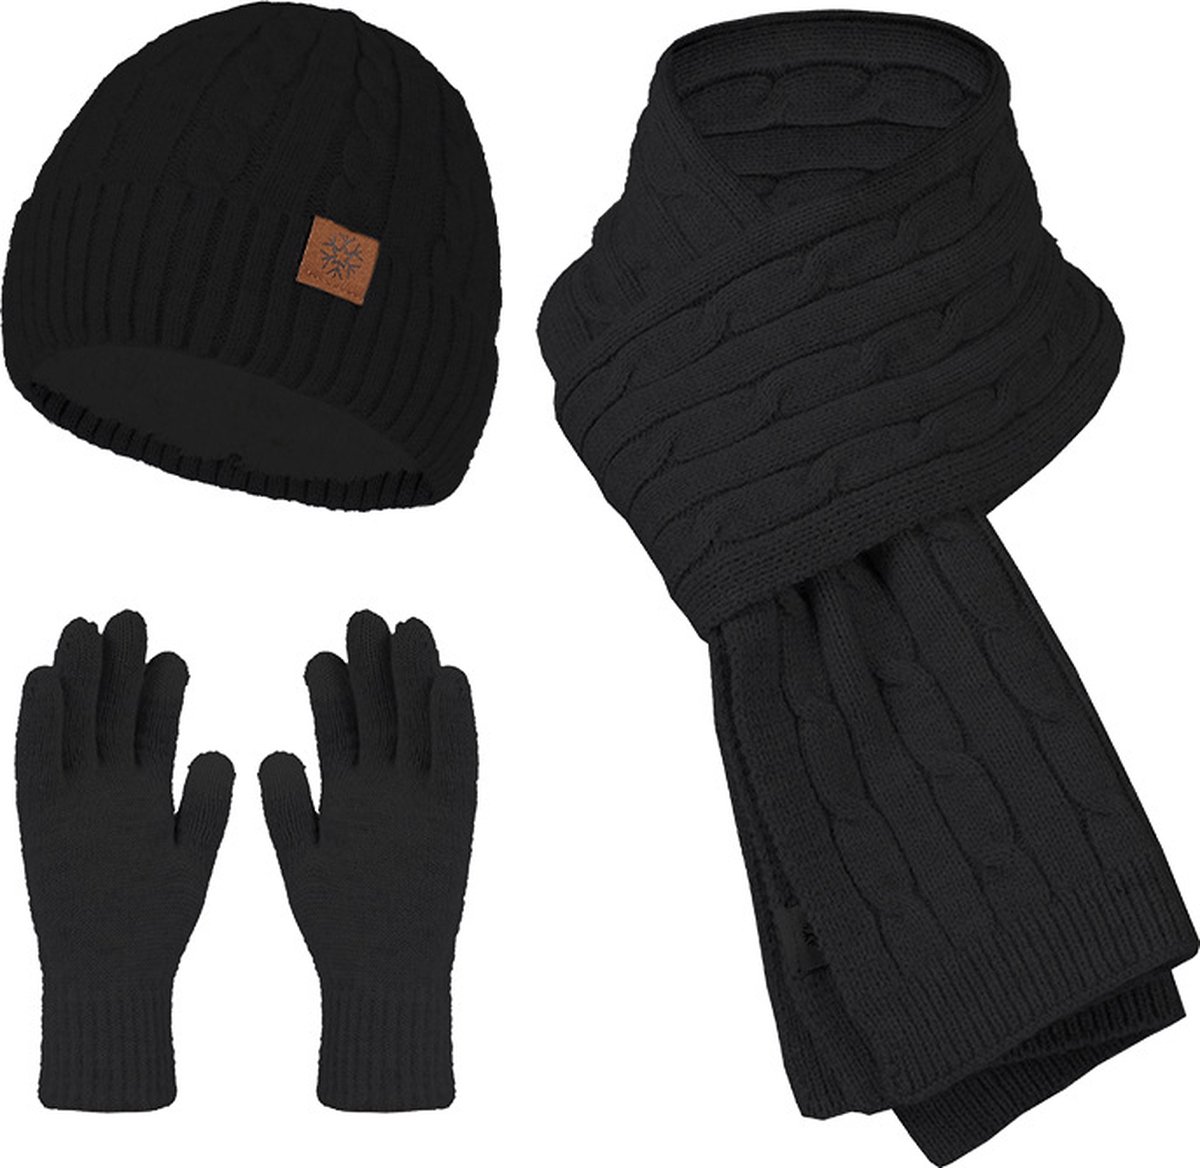 Ensemble hiver adulte noir - Bonnet, écharpe, gants | doublé | unisexe  dames hommes... | bol.com